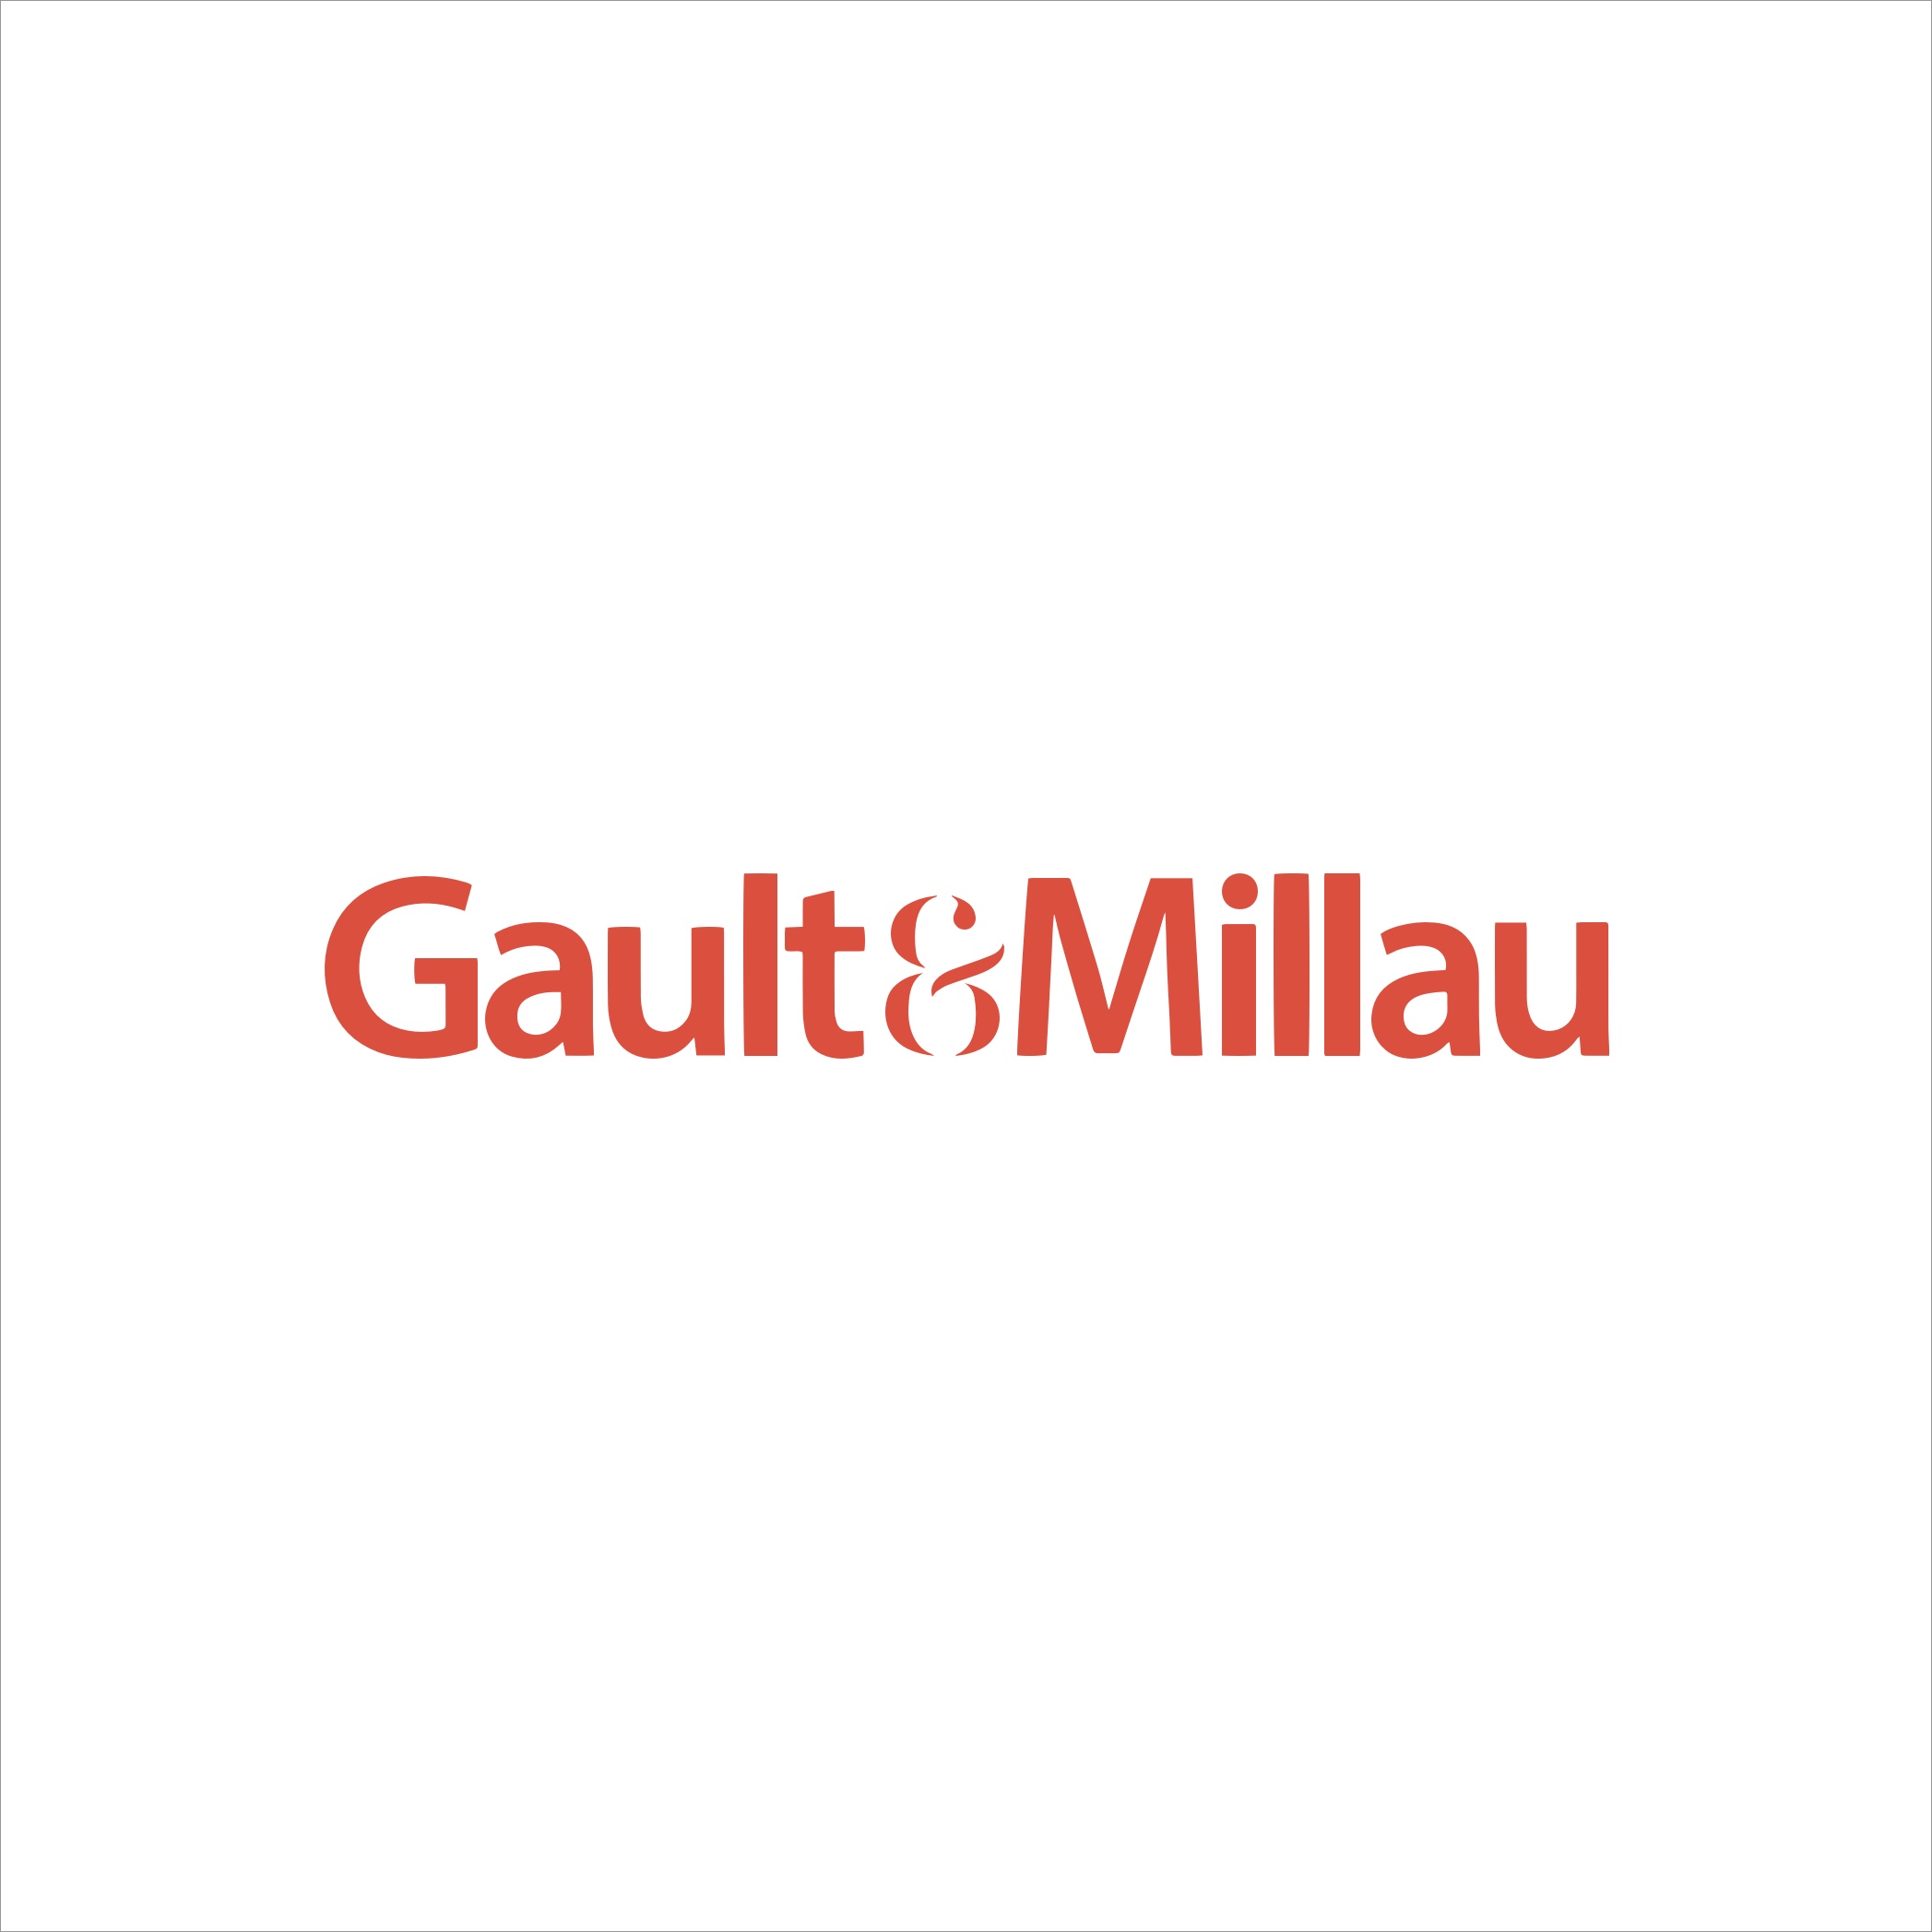 (c) Gaultmillau.at